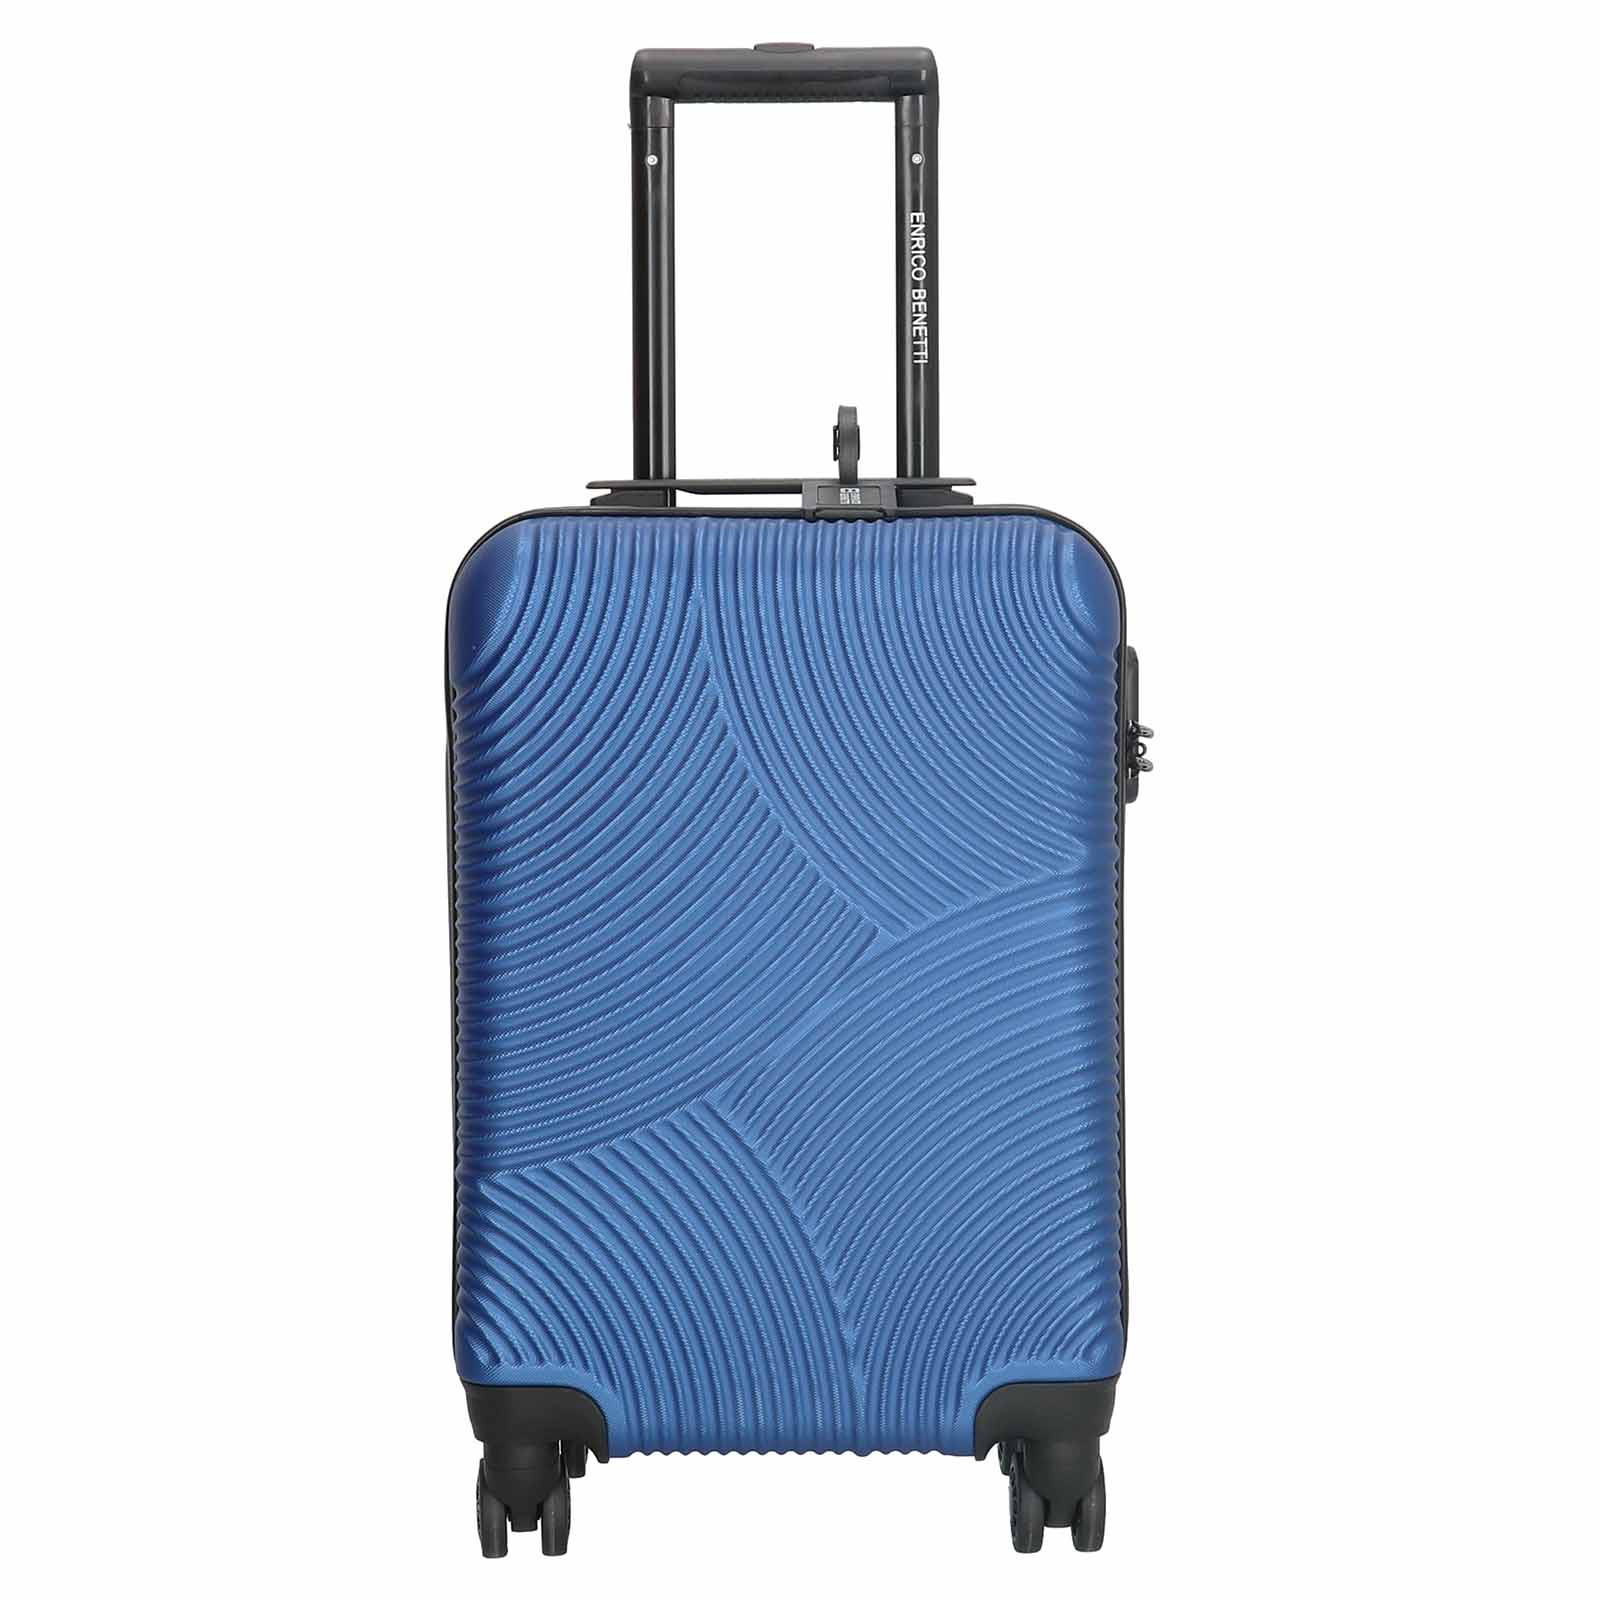 Kabinový cestovní kufr Enrico Benetti Amtel - modrá